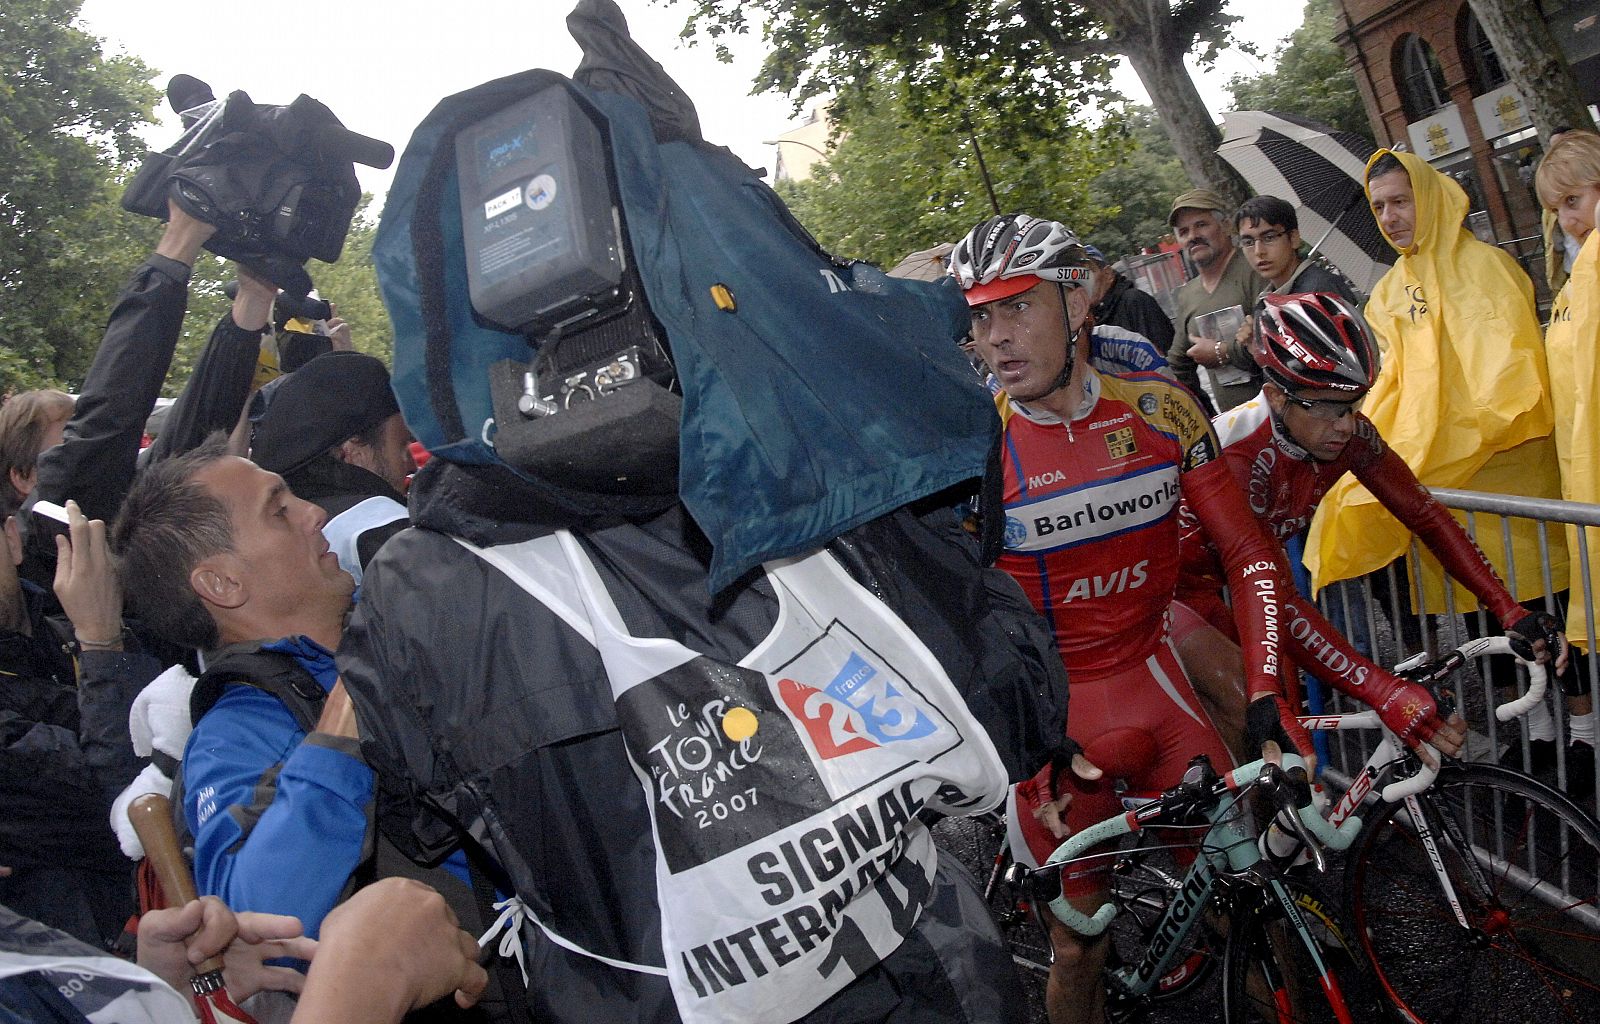 Moisés Dueñas, en una imagen de este Tour de Francia.